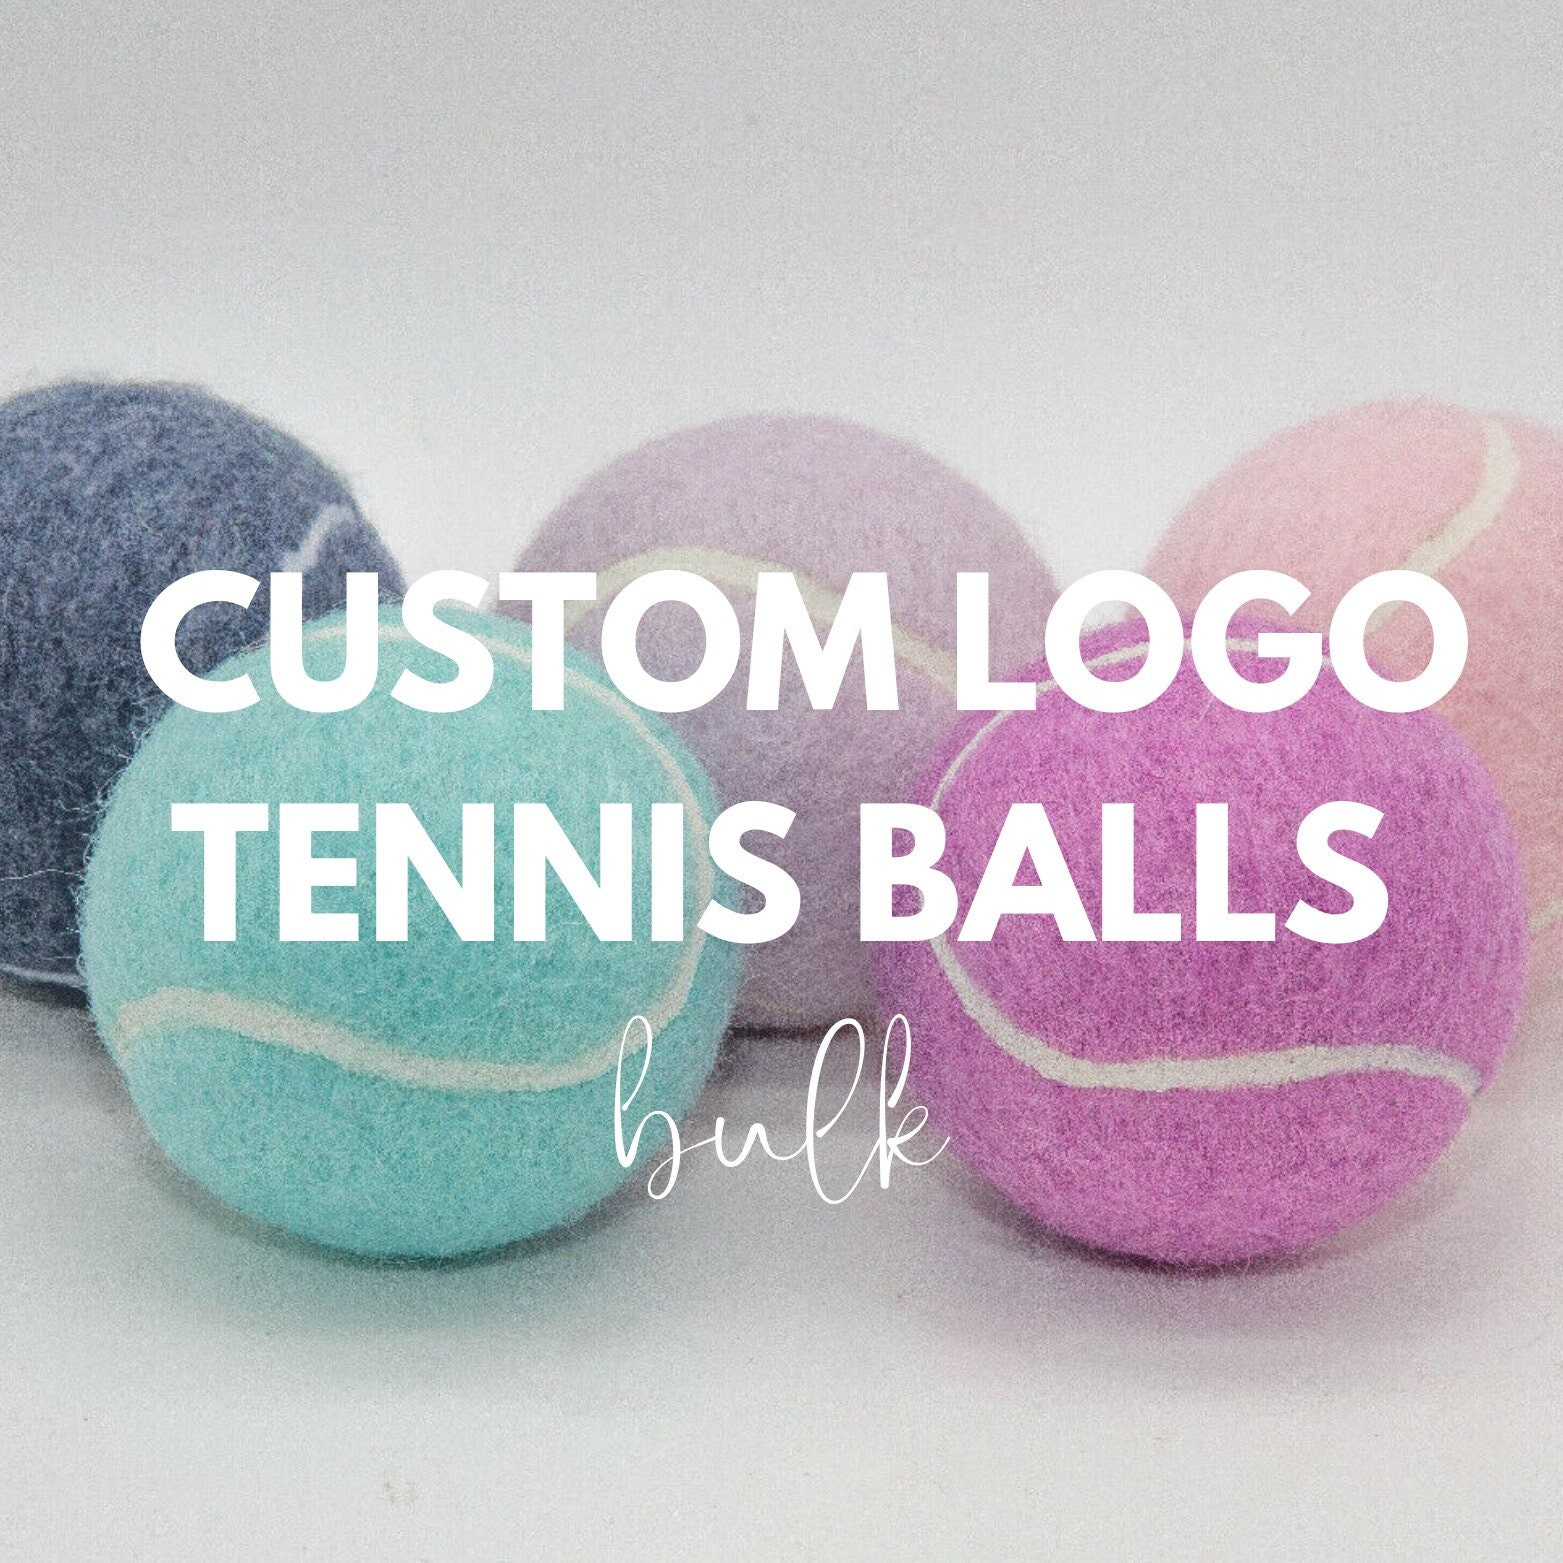 Custom Tennis Balls Custom Logo Customized Tennis Balls